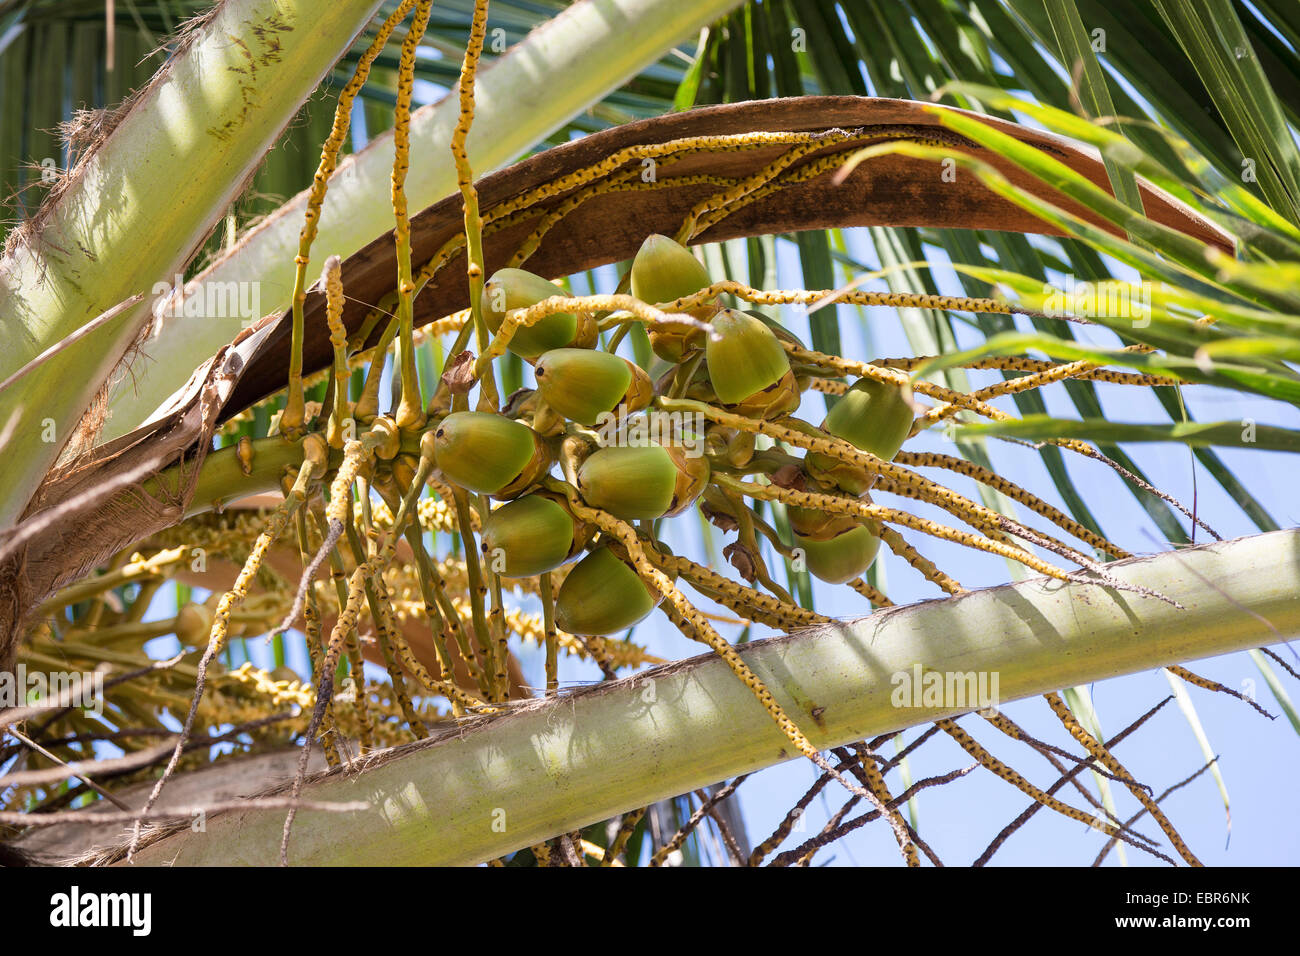 Palma de coco (Cocos nucifera), infructescence Pazifikkueste, Costa Rica Foto de stock